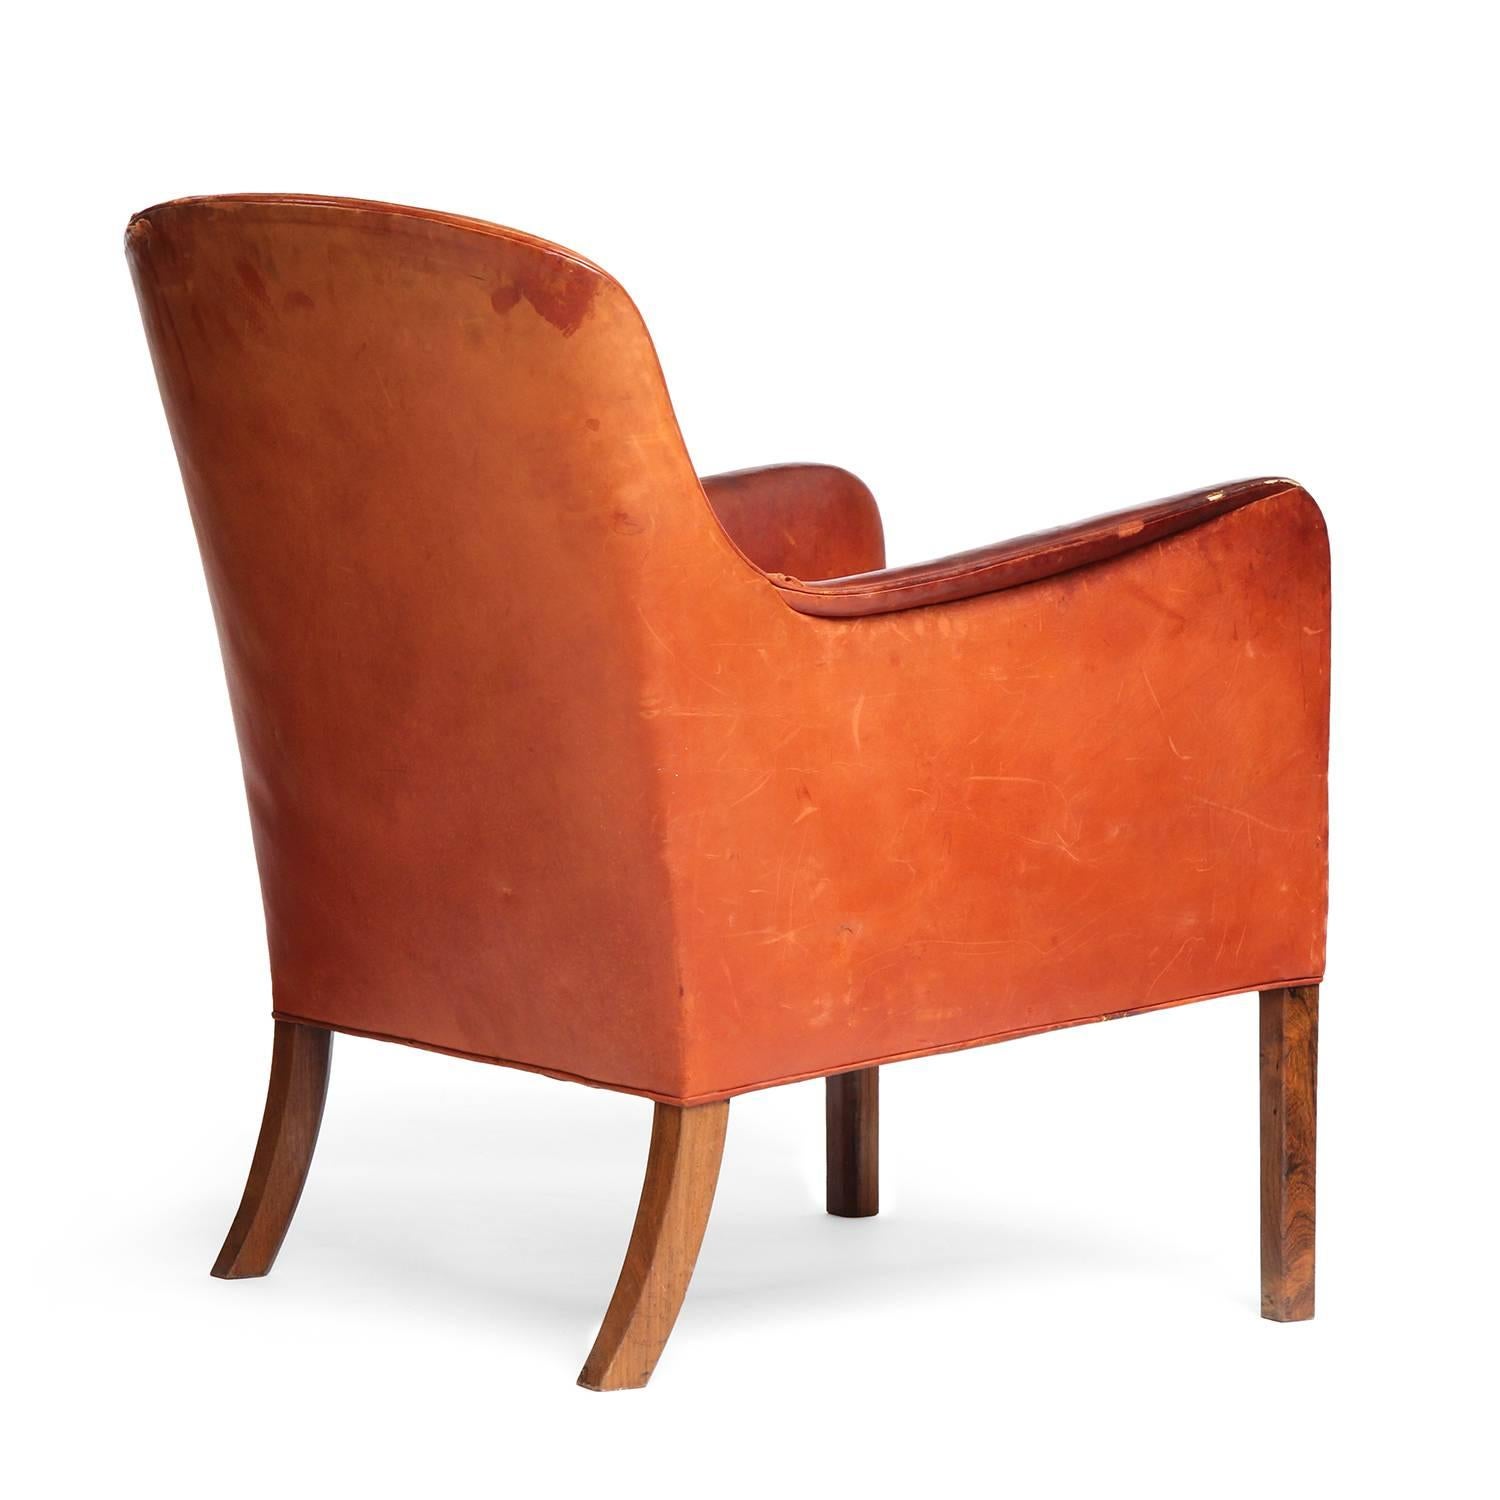 Scandinavian Modern Leather Lounge Chair by Ole Wanscher